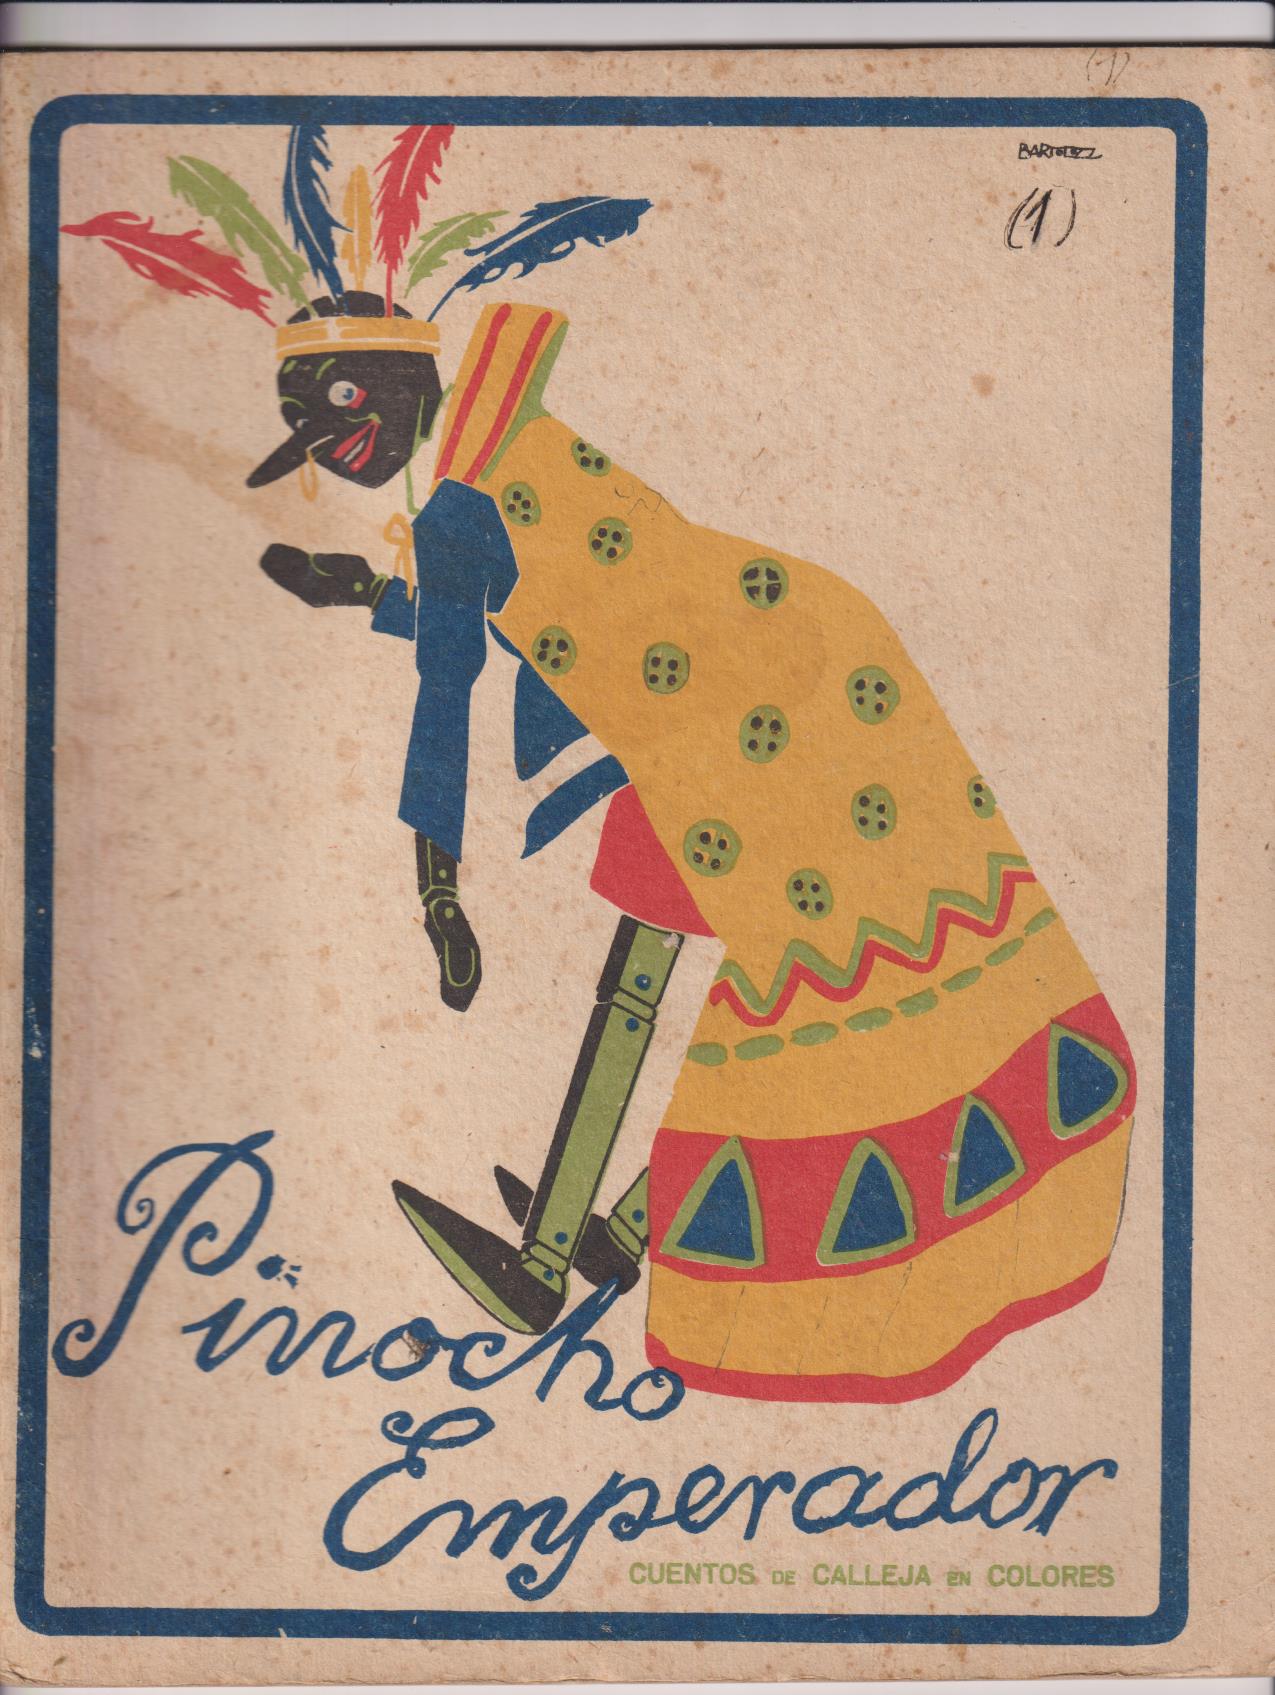 Pinocho nº 1. Pinocho Emperador. Calleja 1919 (28x22) 16 páginas, abundantes ilustraciones color